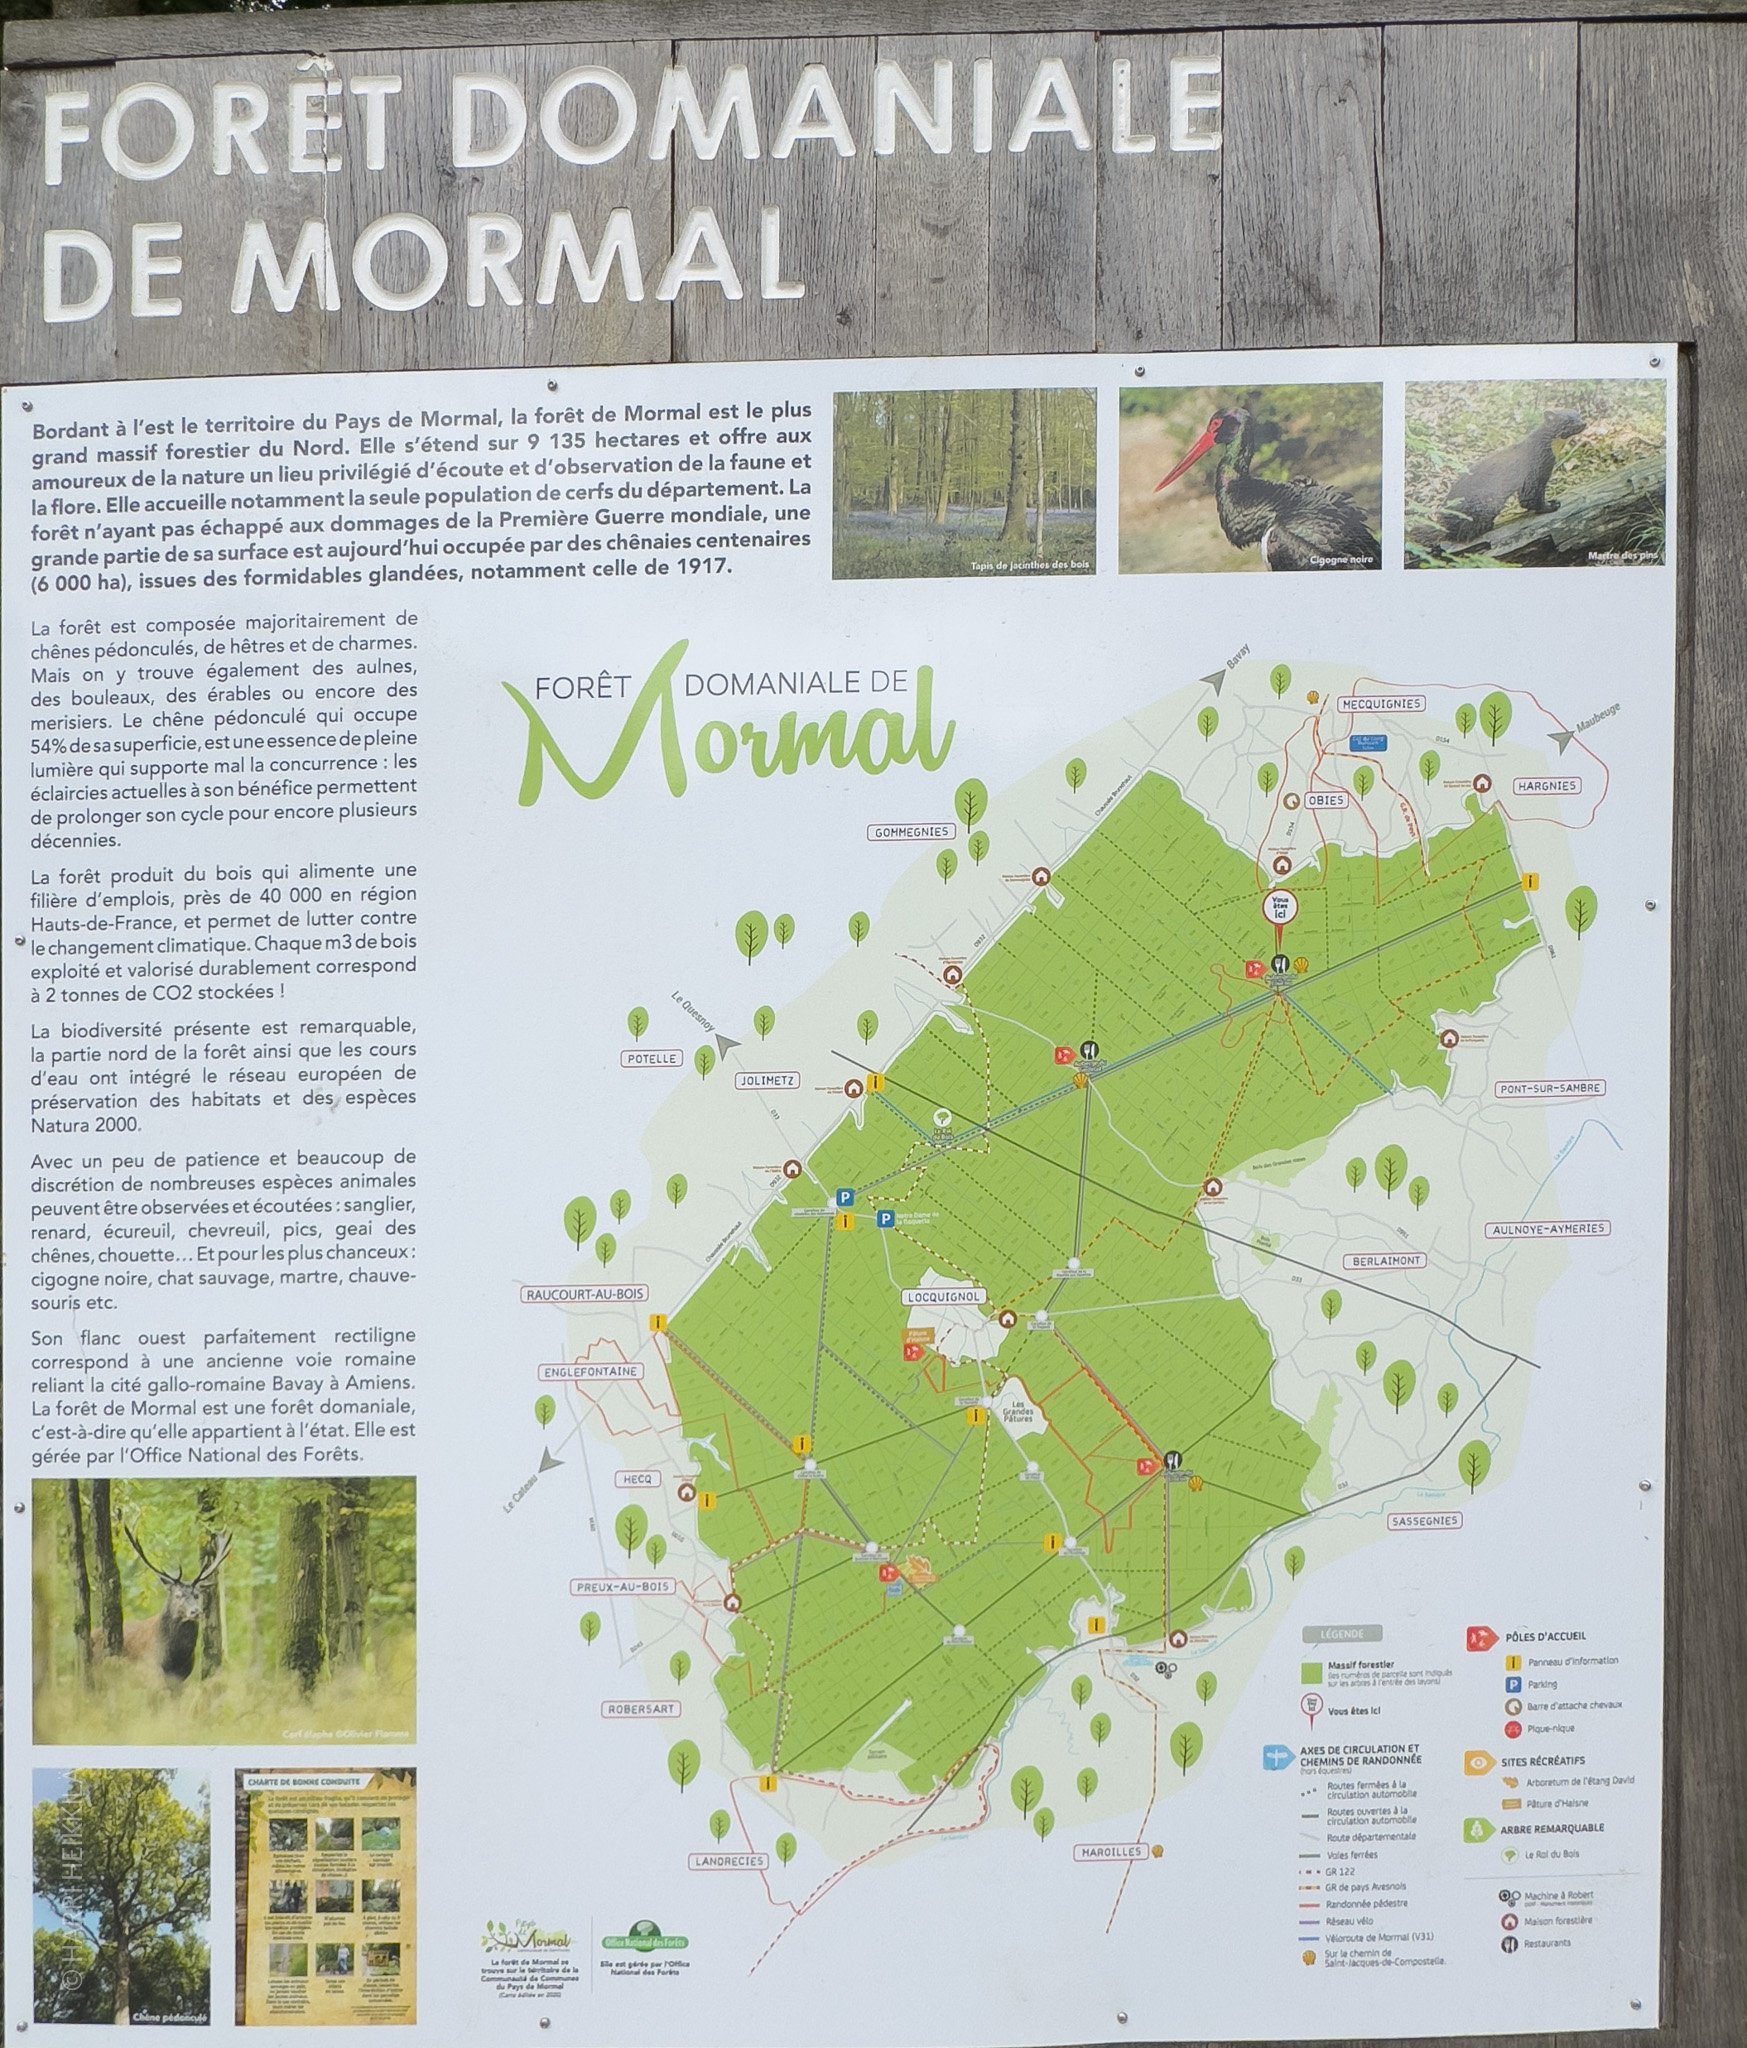 Mormalin tammimetsä on noin 20 x 10 km